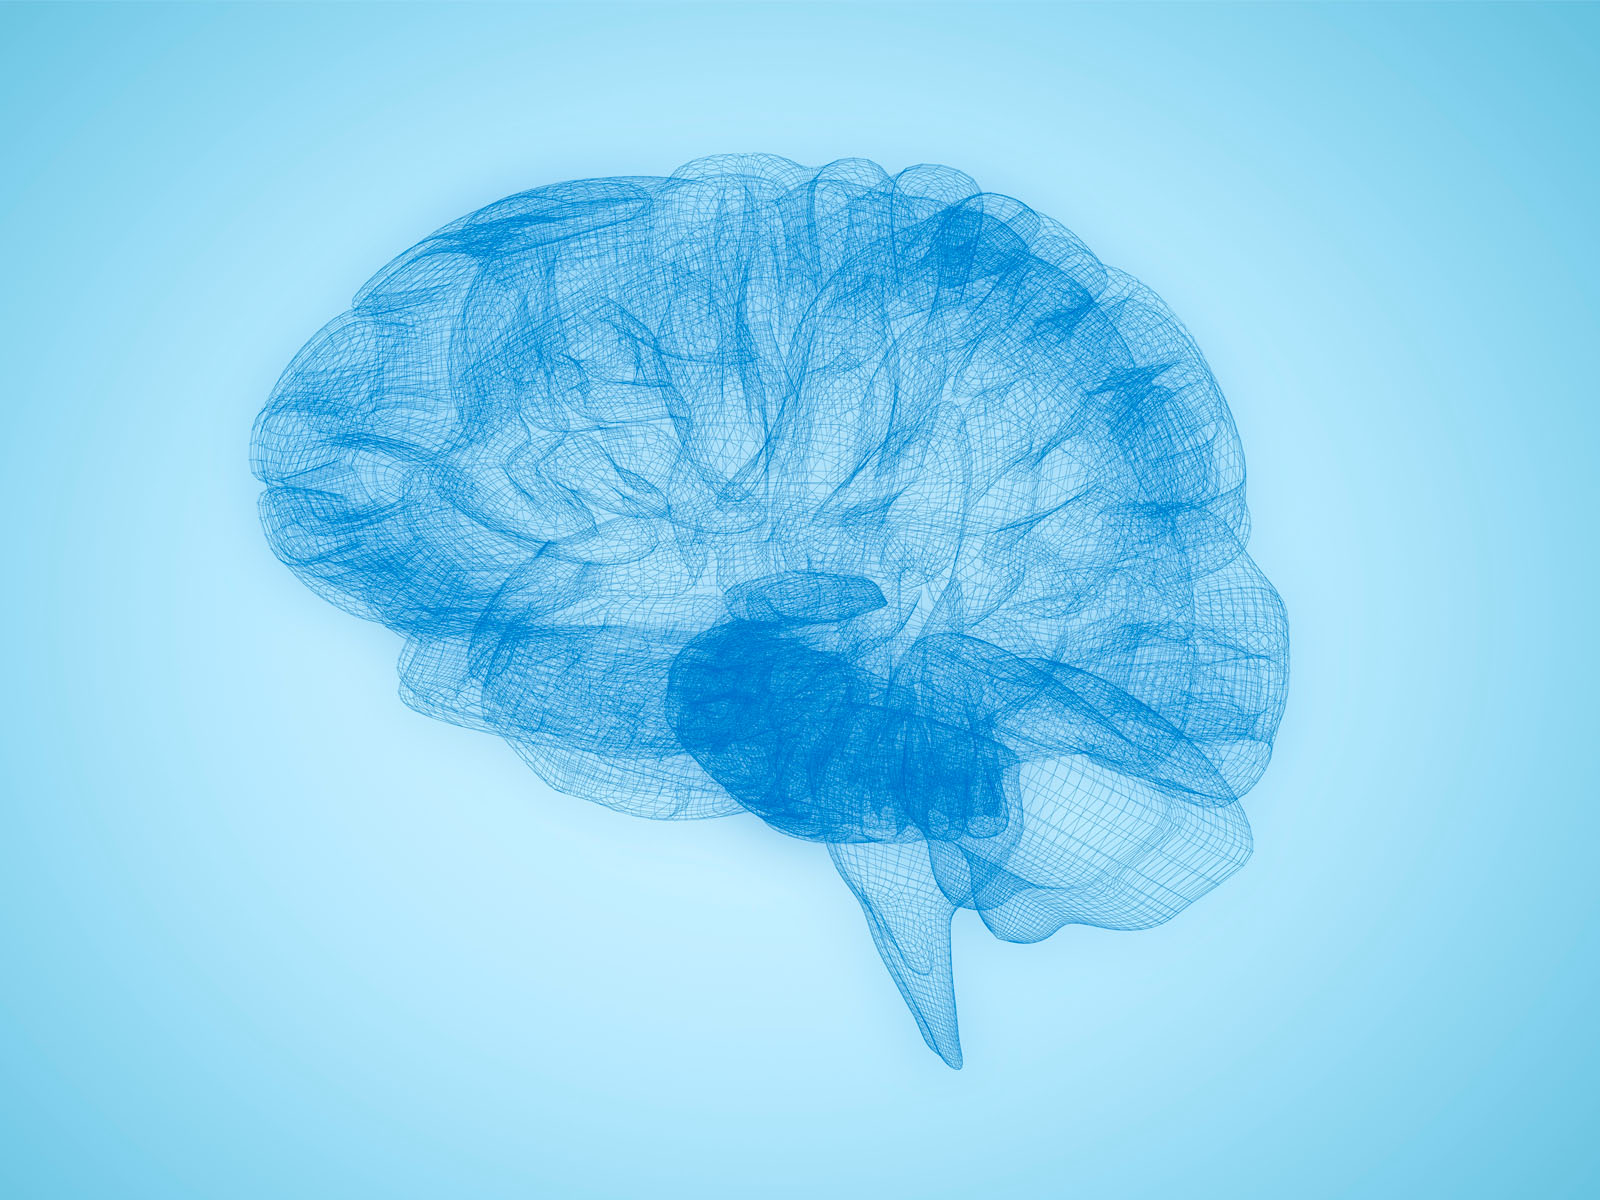 Image 3D du cerveau